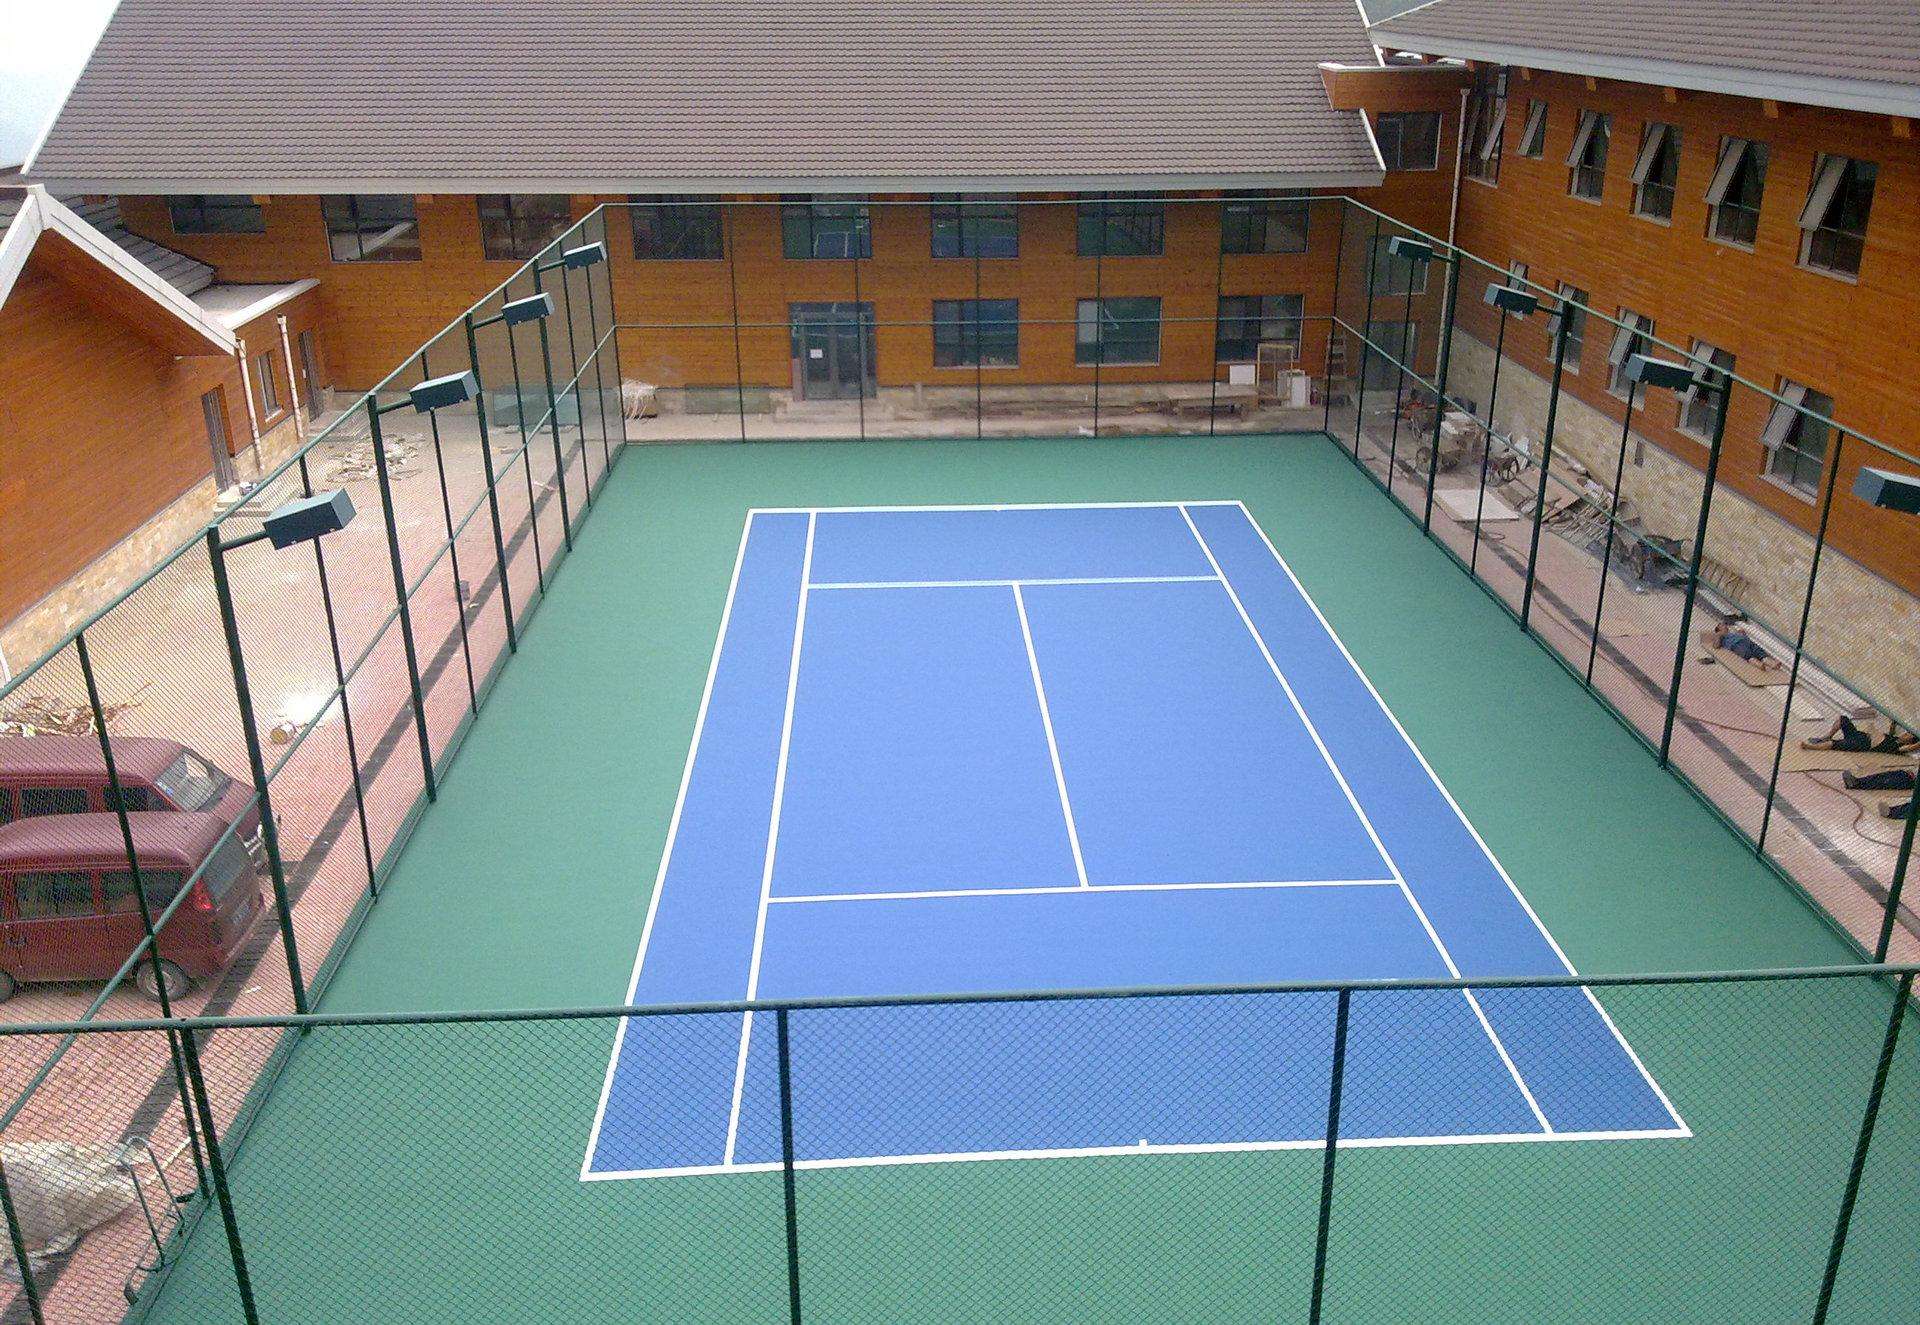 塑胶网球场